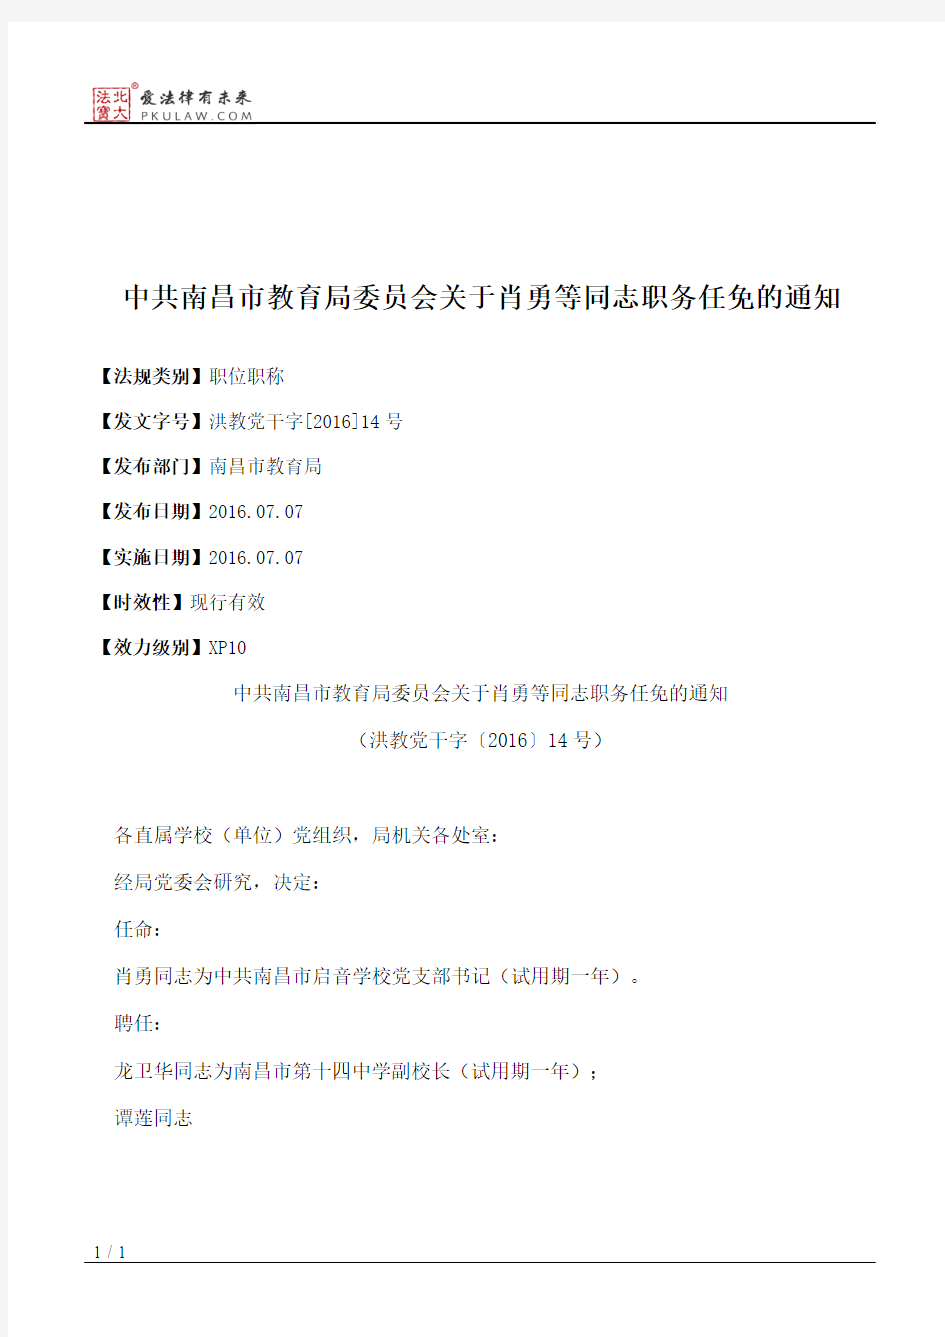 中共南昌市教育局委员会关于肖勇等同志职务任免的通知